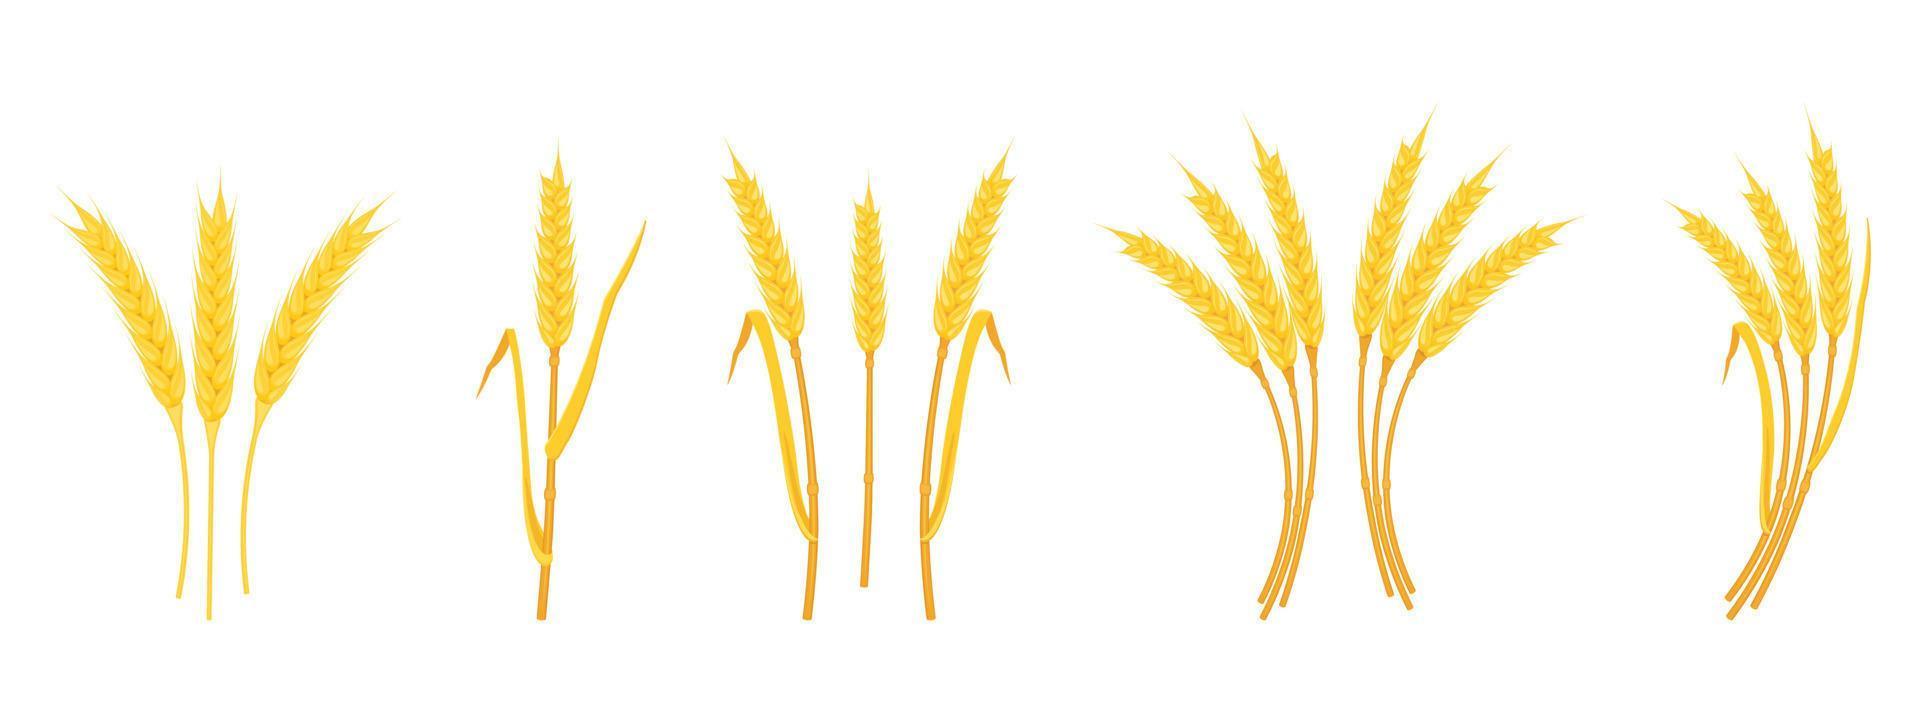 spighe di grano con spighe e steli di varie forme isolati su sfondo bianco. vettore